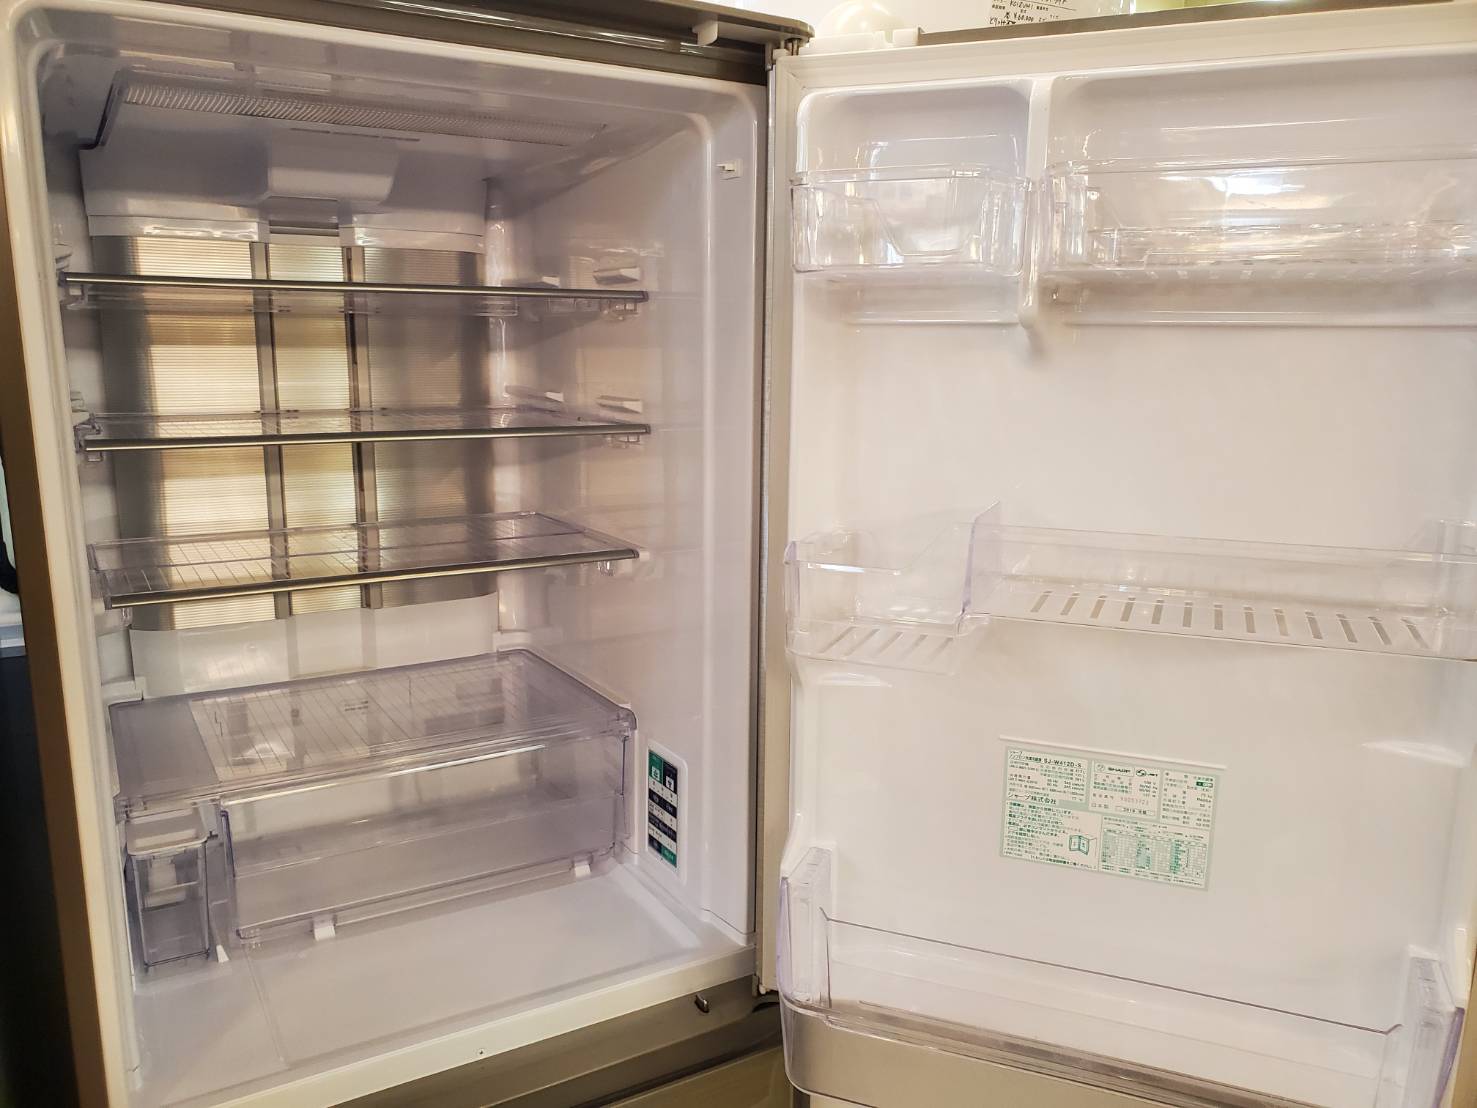 ☆SHARP シャープ 412L 5ドア 冷蔵庫 2018年製 大型 冷凍冷蔵庫 買取しました☆ | 愛知と岐阜のリサイクルショップ 再良市場